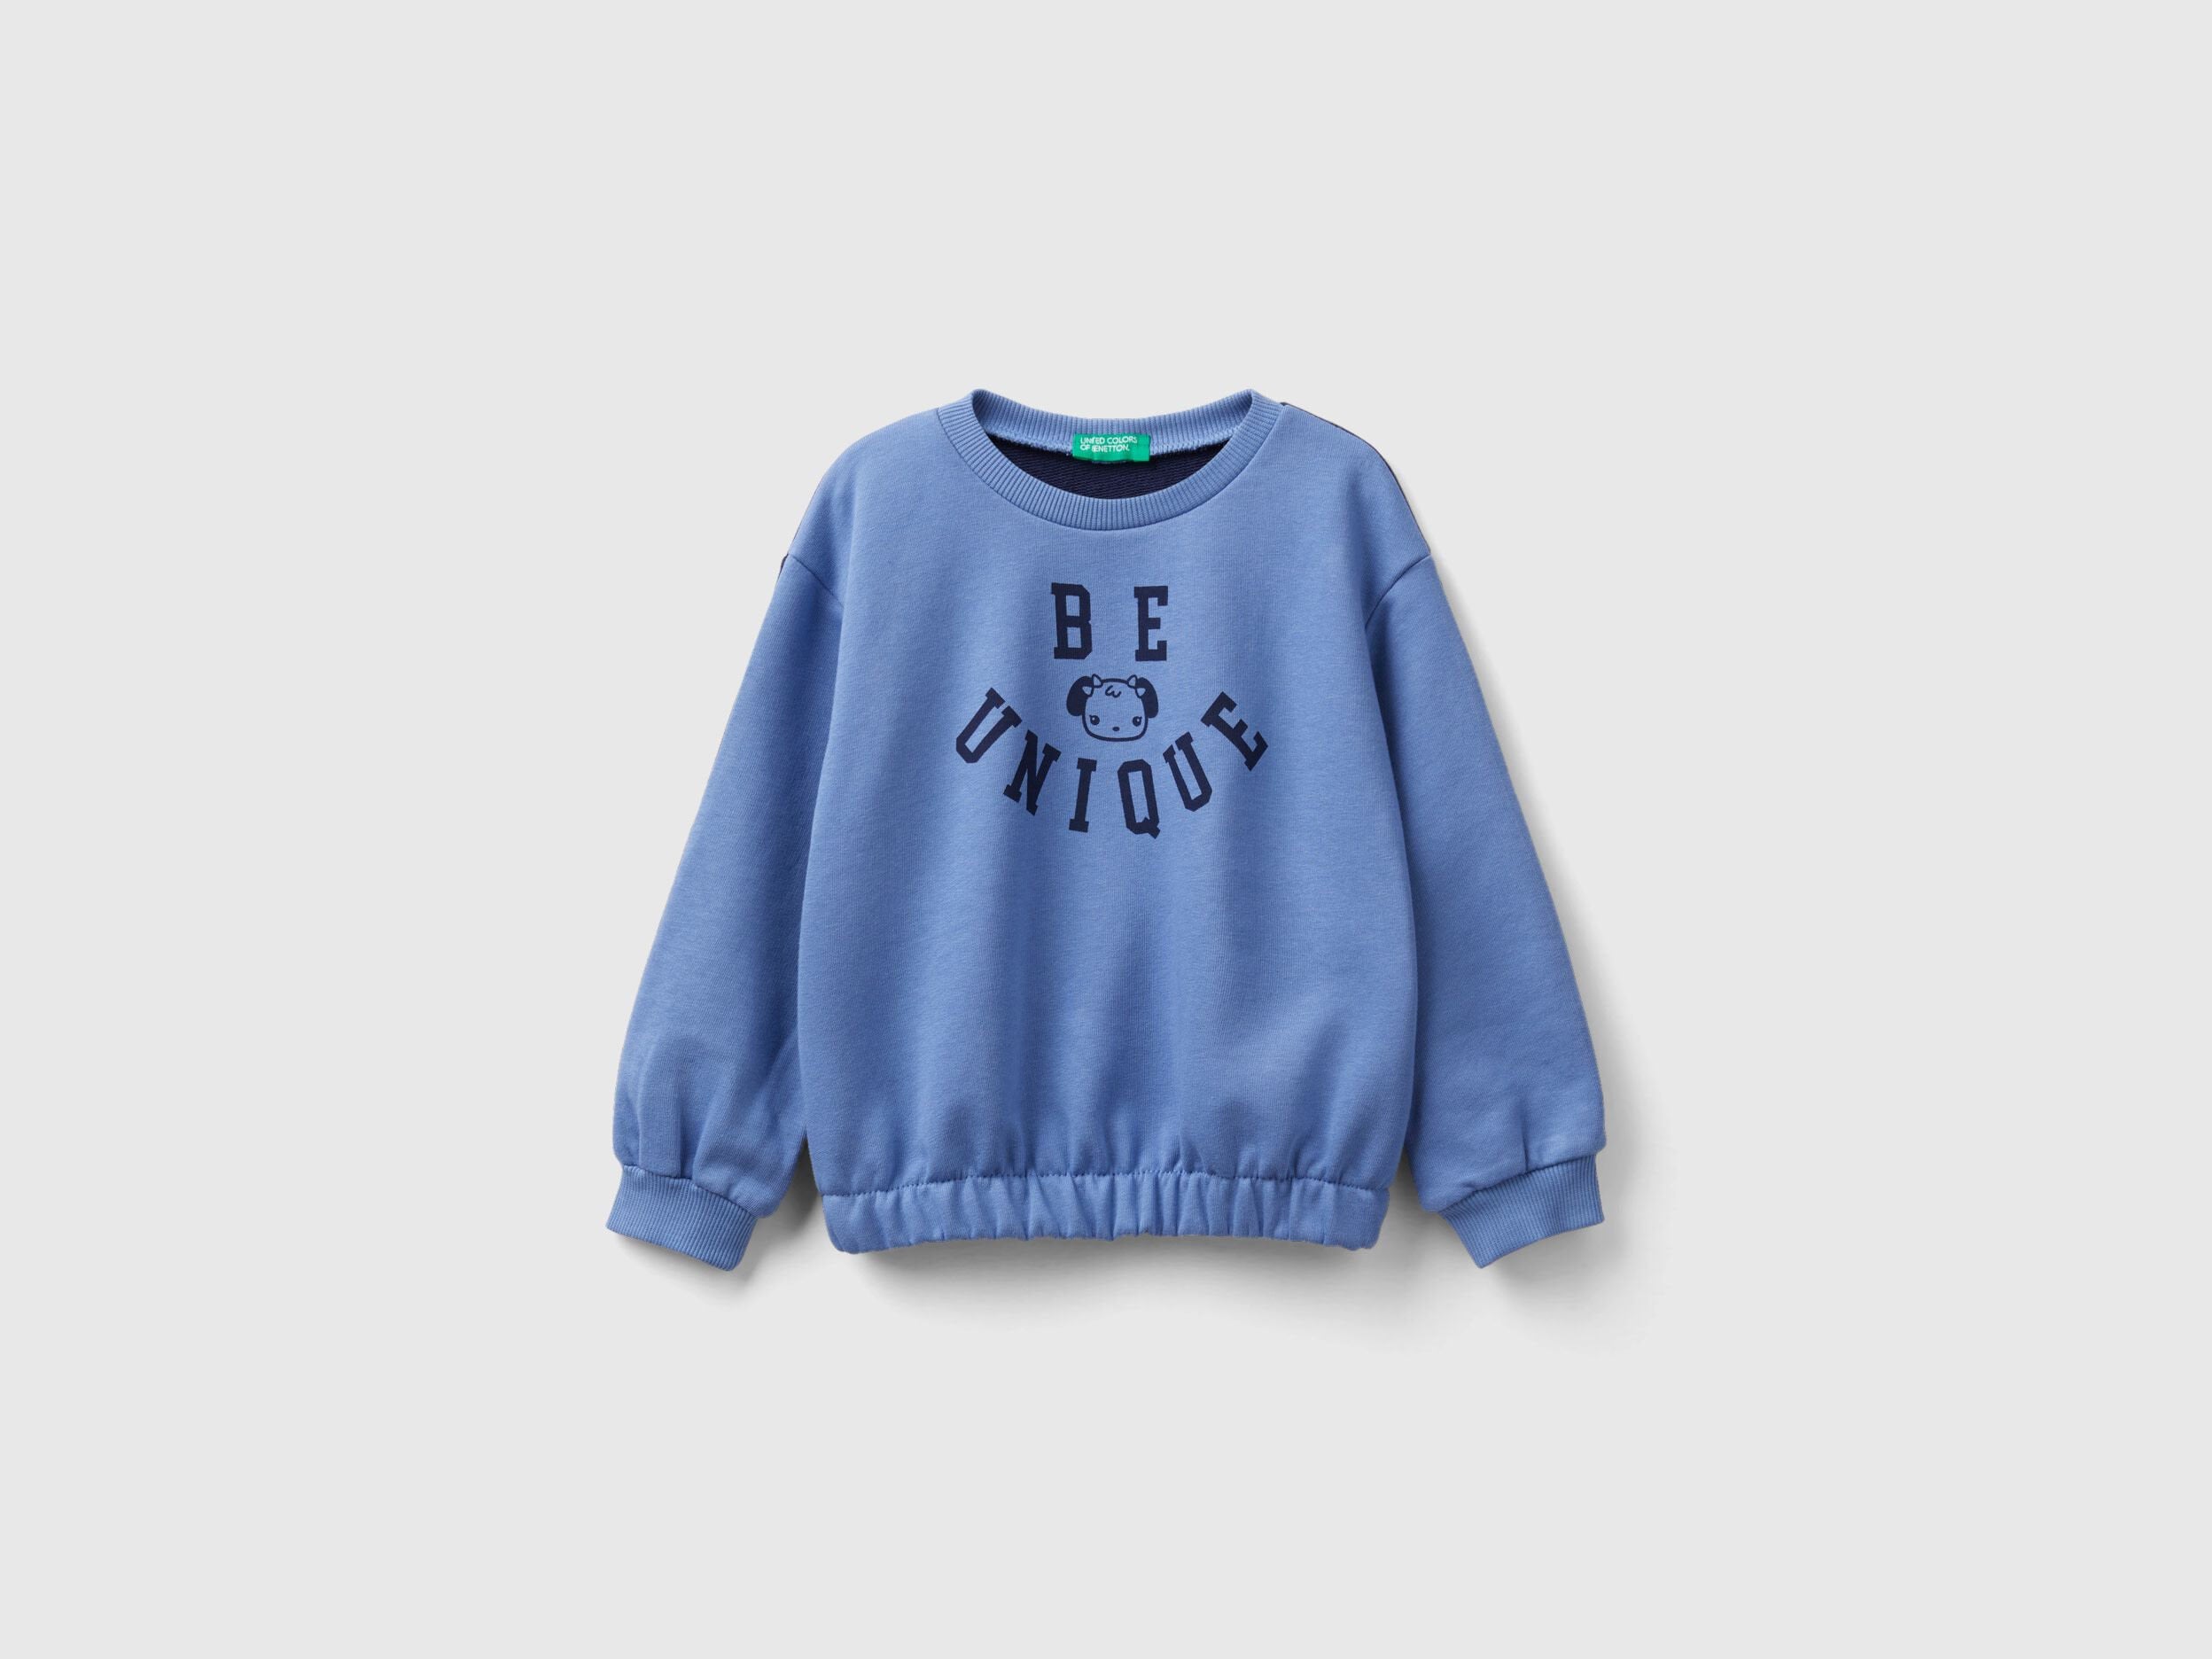 Color Block Sweatshirt With Print_3PANG10AI_05N_01